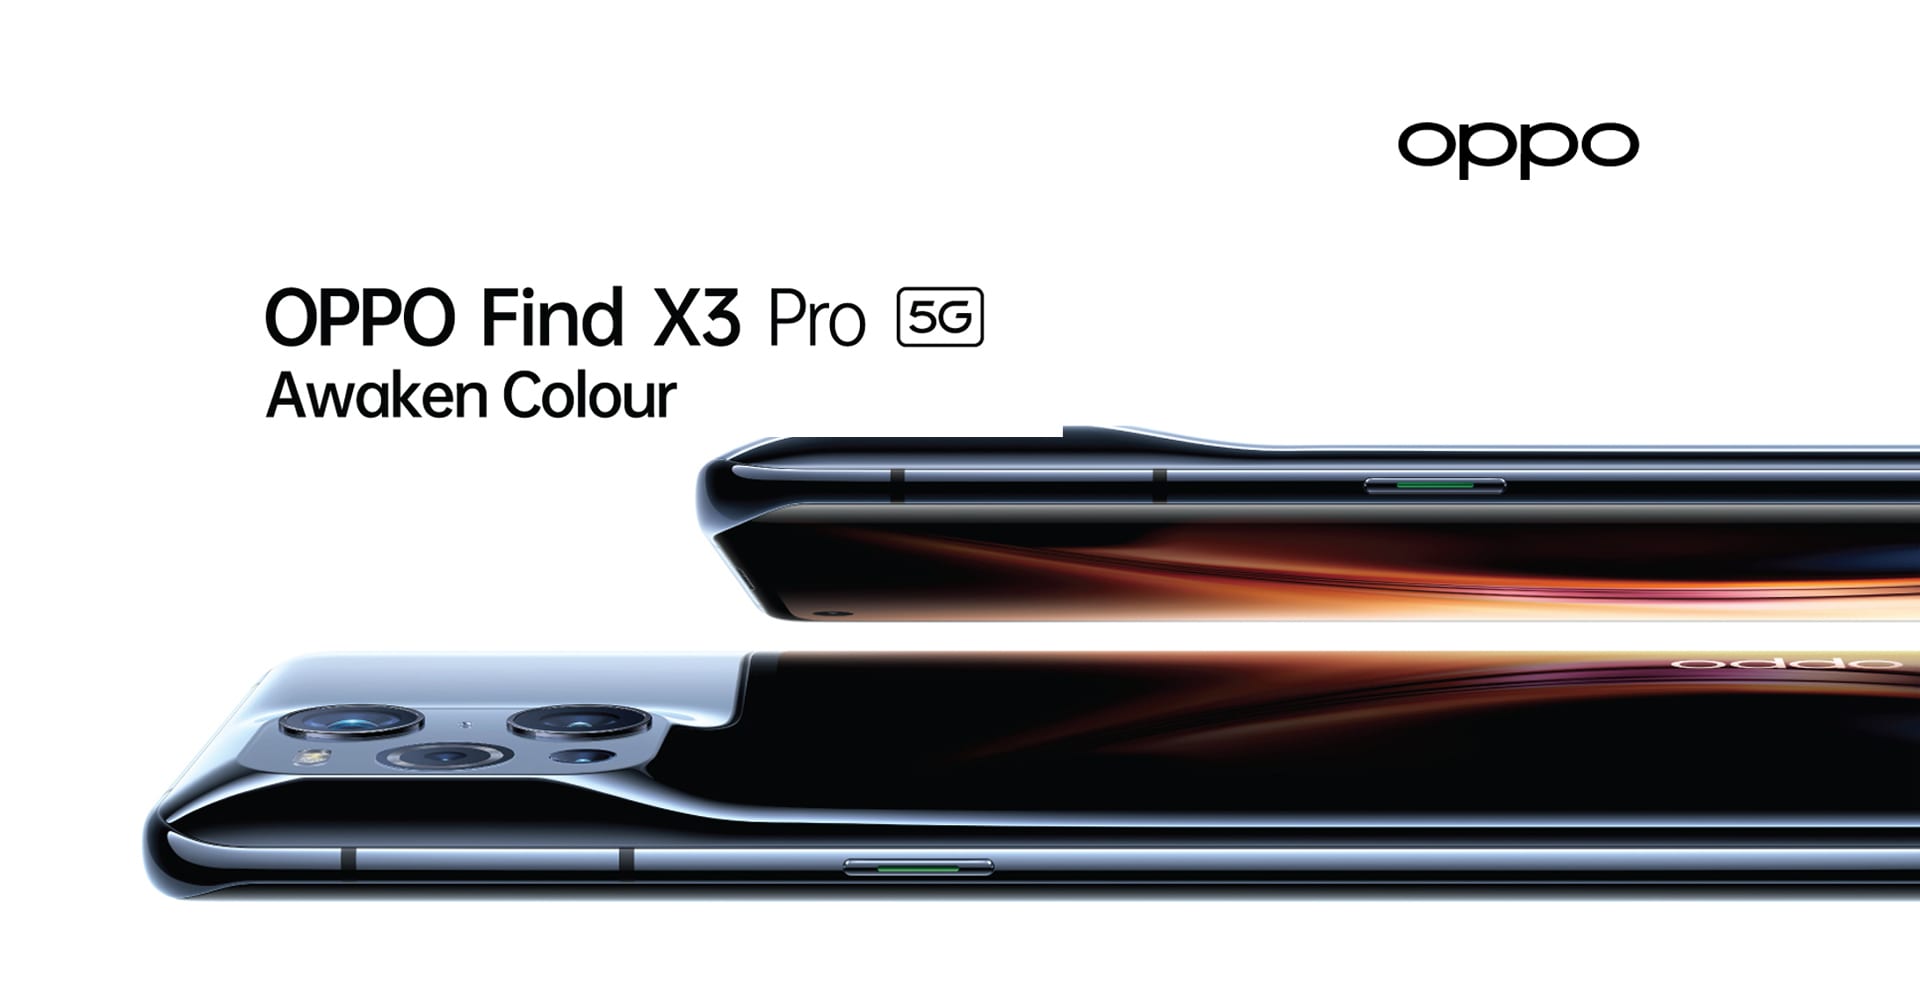 เปิดโปรโมชัน OPPO Find X3 Pro 5G ทั้ง 3 ค่ายจองค่ายไหนได้ส่วนลดเท่าไหร่